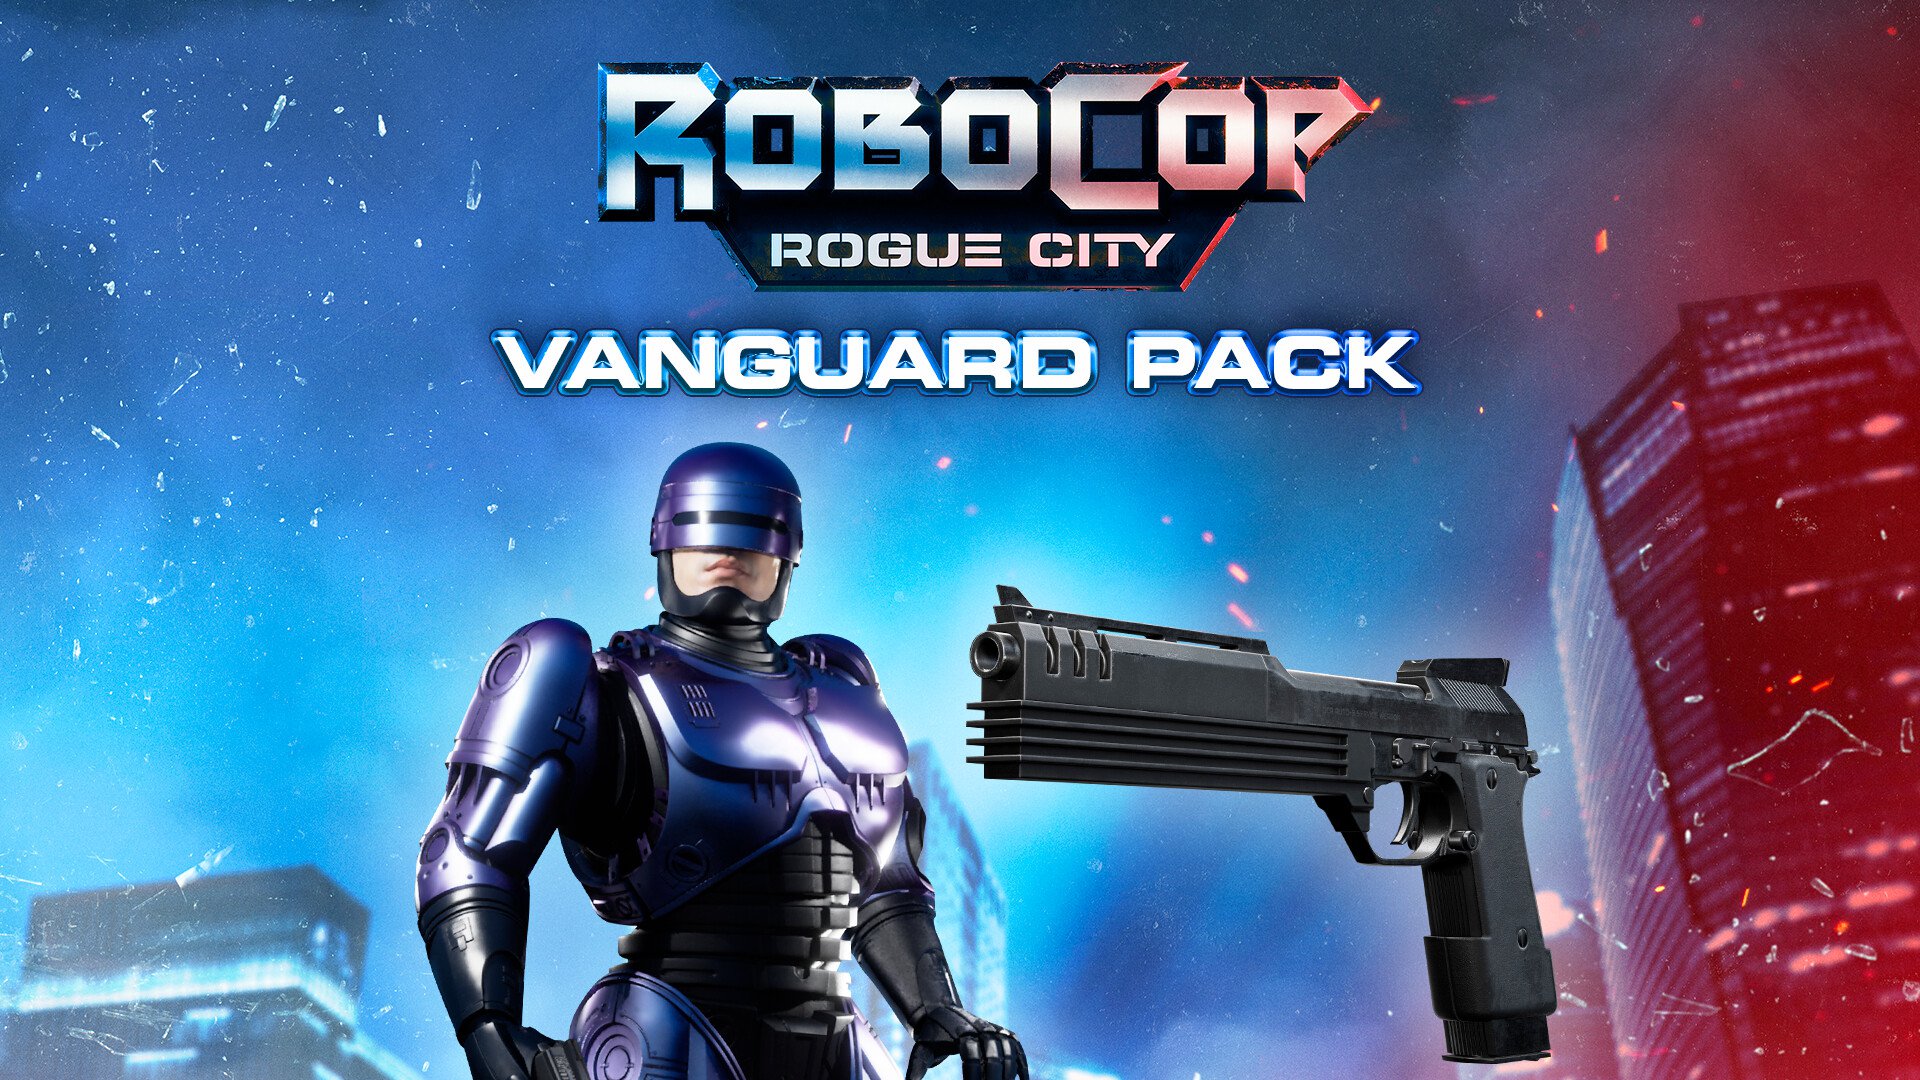 RoboCop: Rogue City in 60 Seconds